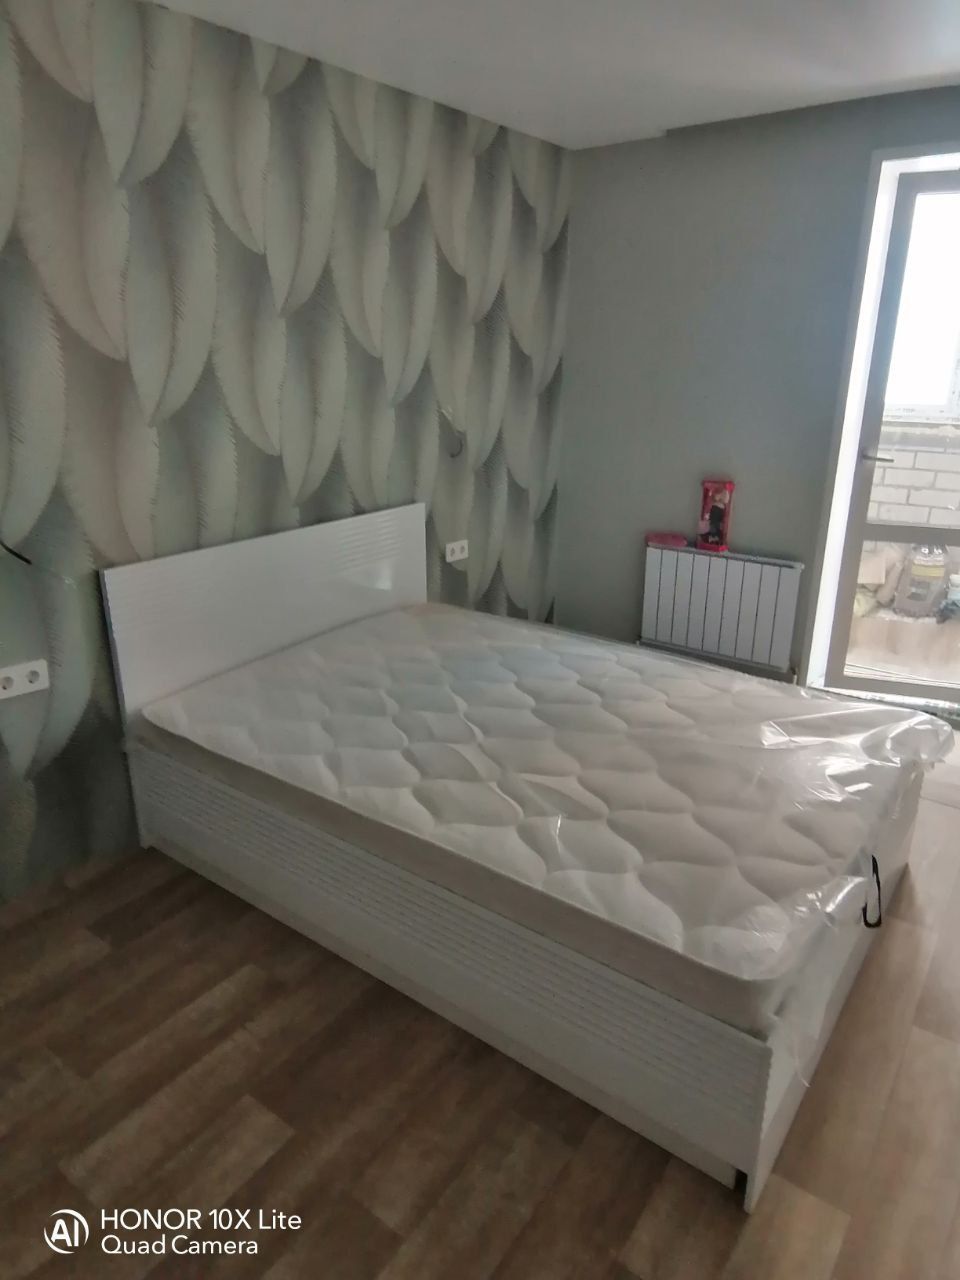 Двуспальная кровать "Афина" 160 х 200 с подъемным механизмом цвет белый глянец  / sancho 2202